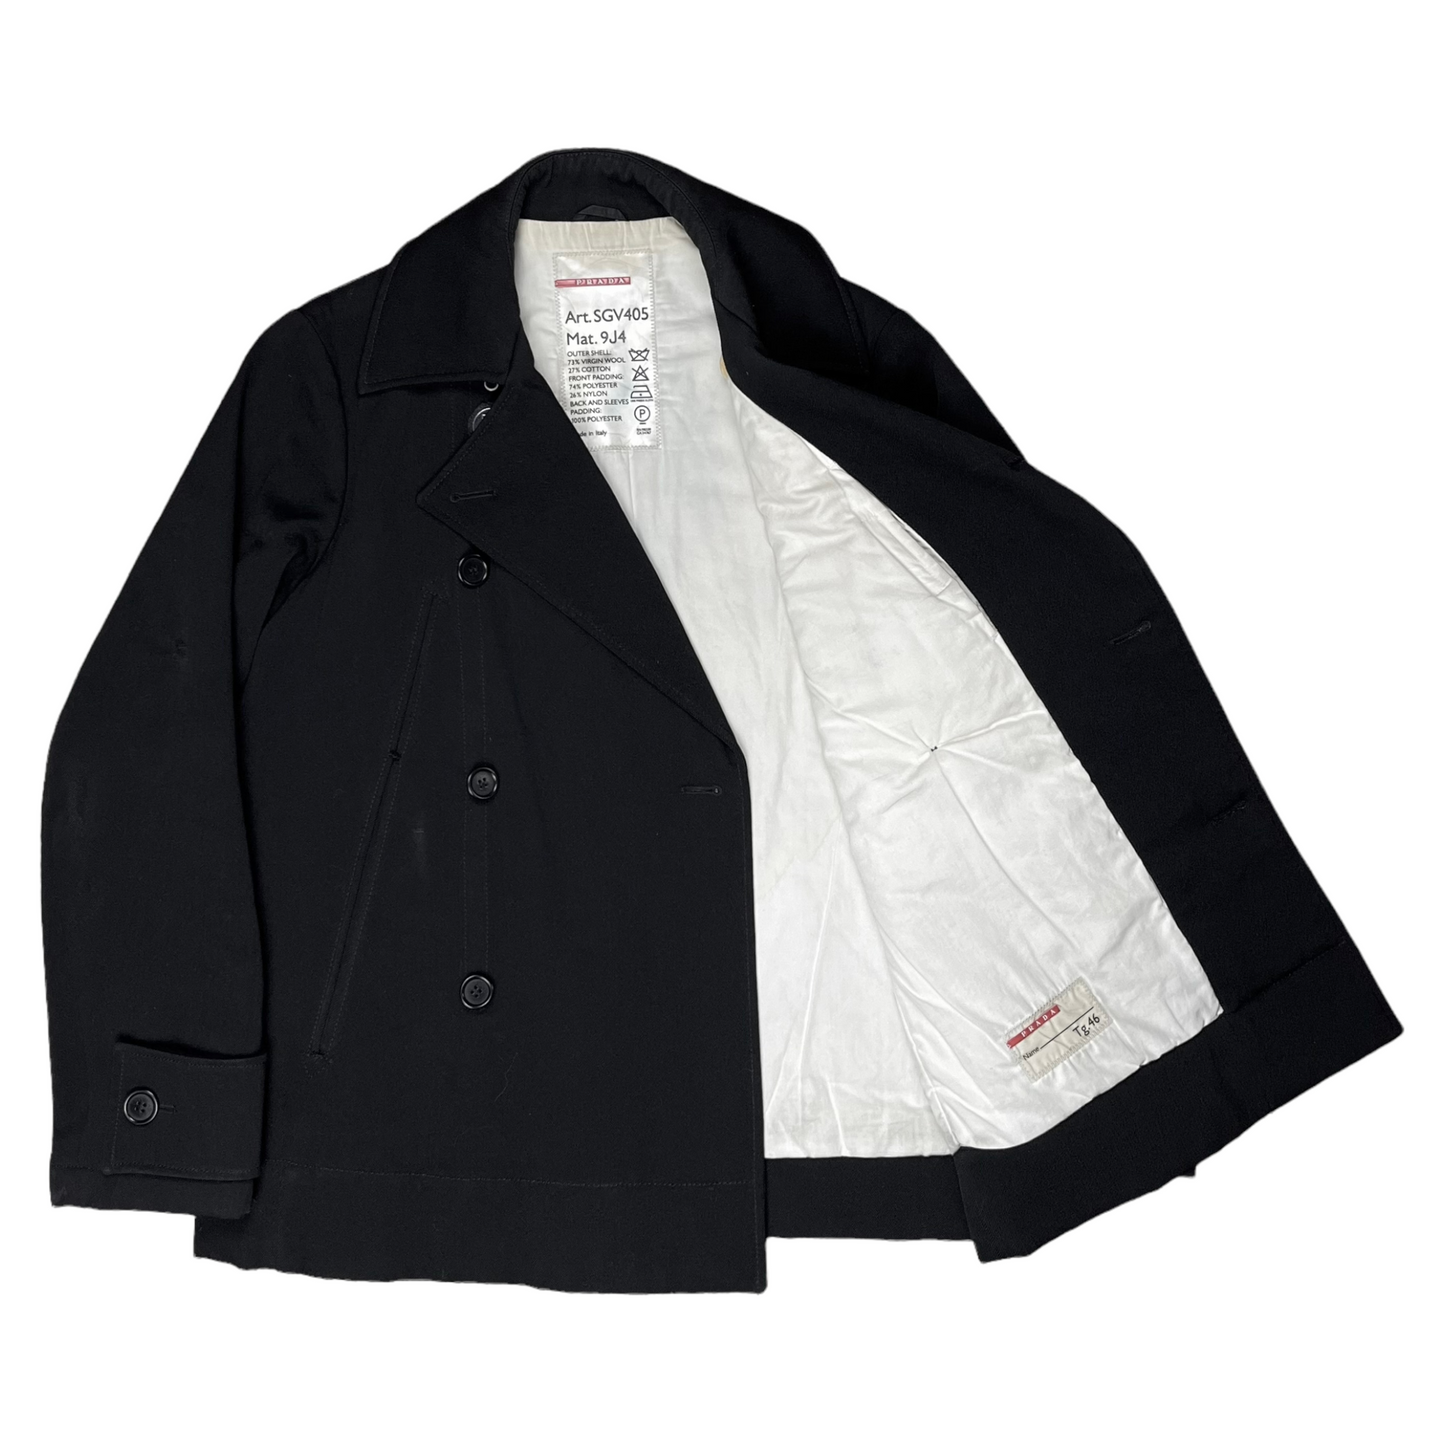 Prada F/W 2016 sailor top with detachable hood and collar — JAMES